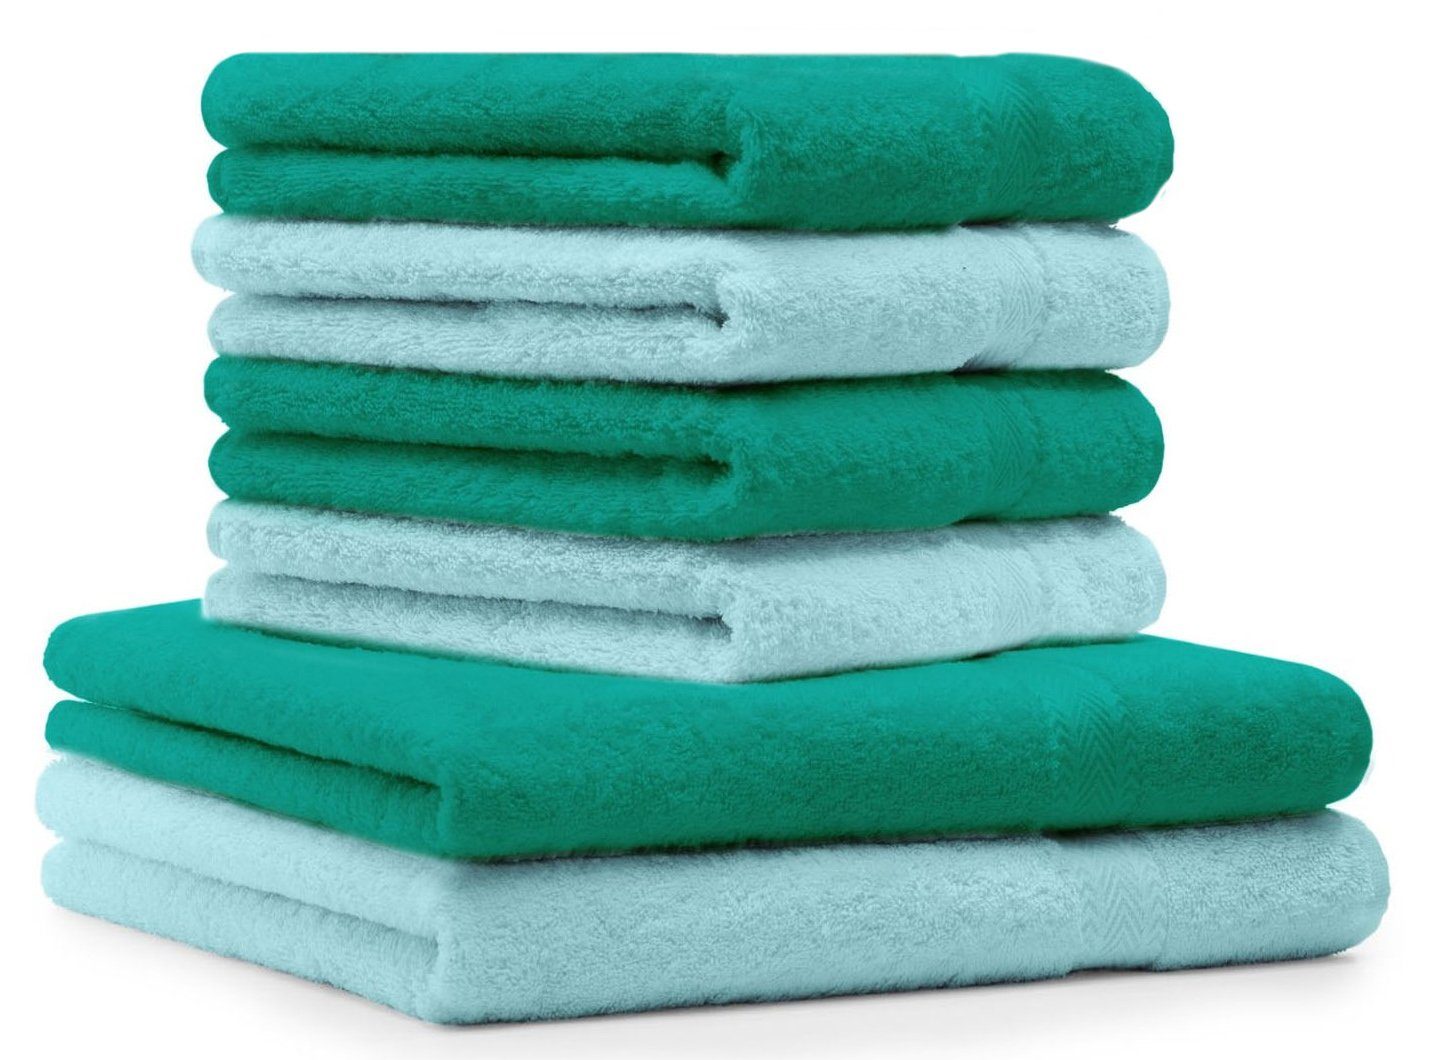 Betz Handtuch Set 6-TLG. Handtuch-Set Premium 100% Baumwolle 2 Duschtücher 4 Handtücher Farbe smaragdgrün und türkis, 100% Baumwolle